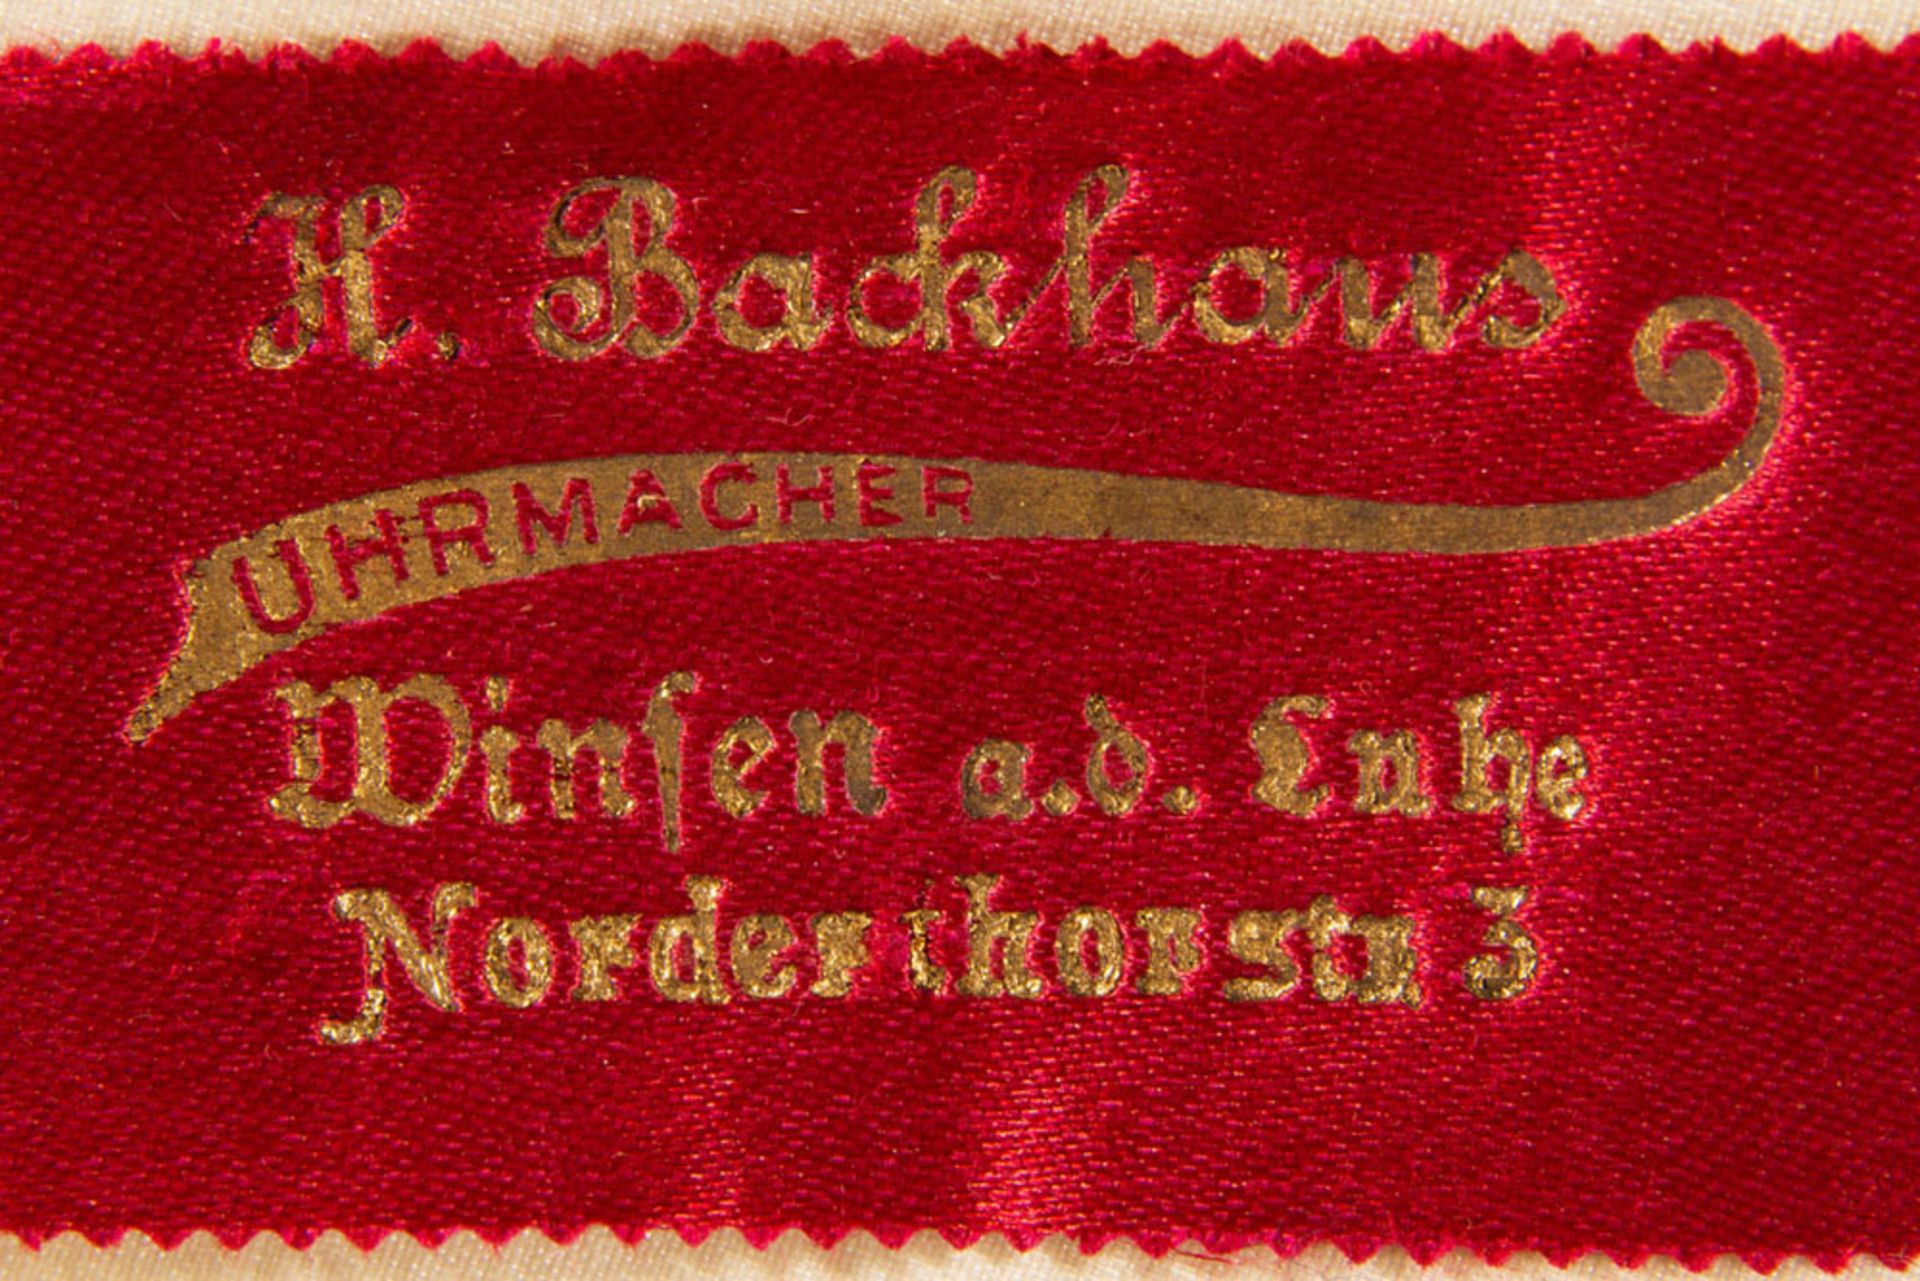 Antike Damentaschenuhr um 1900 in orig. Kartonage. Werk läuft an. Durchmesser ca 30mm. - Image 9 of 10